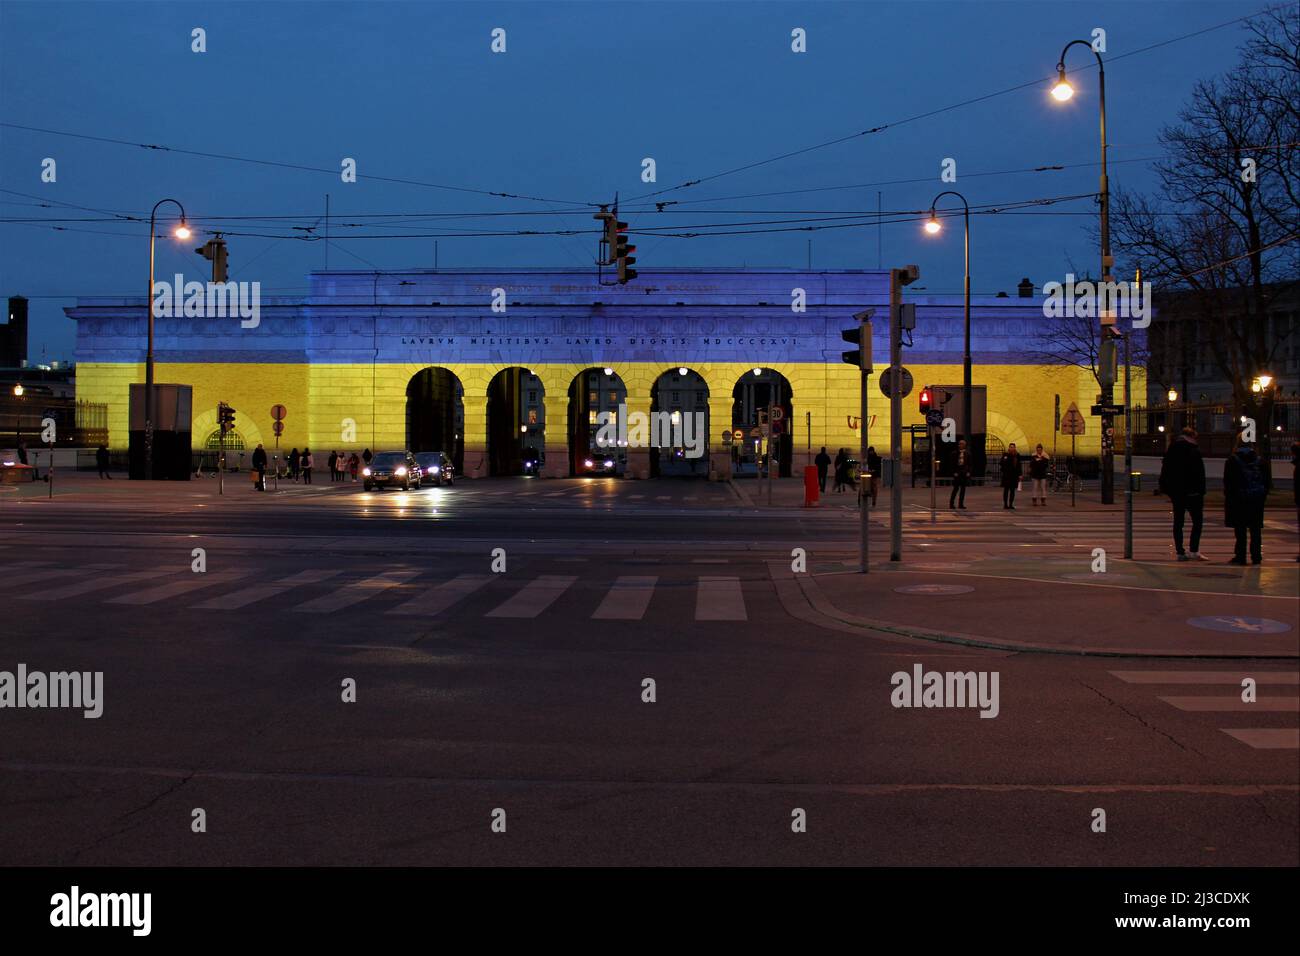 Solidarietà austriaca con l'Ucraina. Hofburg cancello illuminato in colori ucraini bandiera. Foto Stock